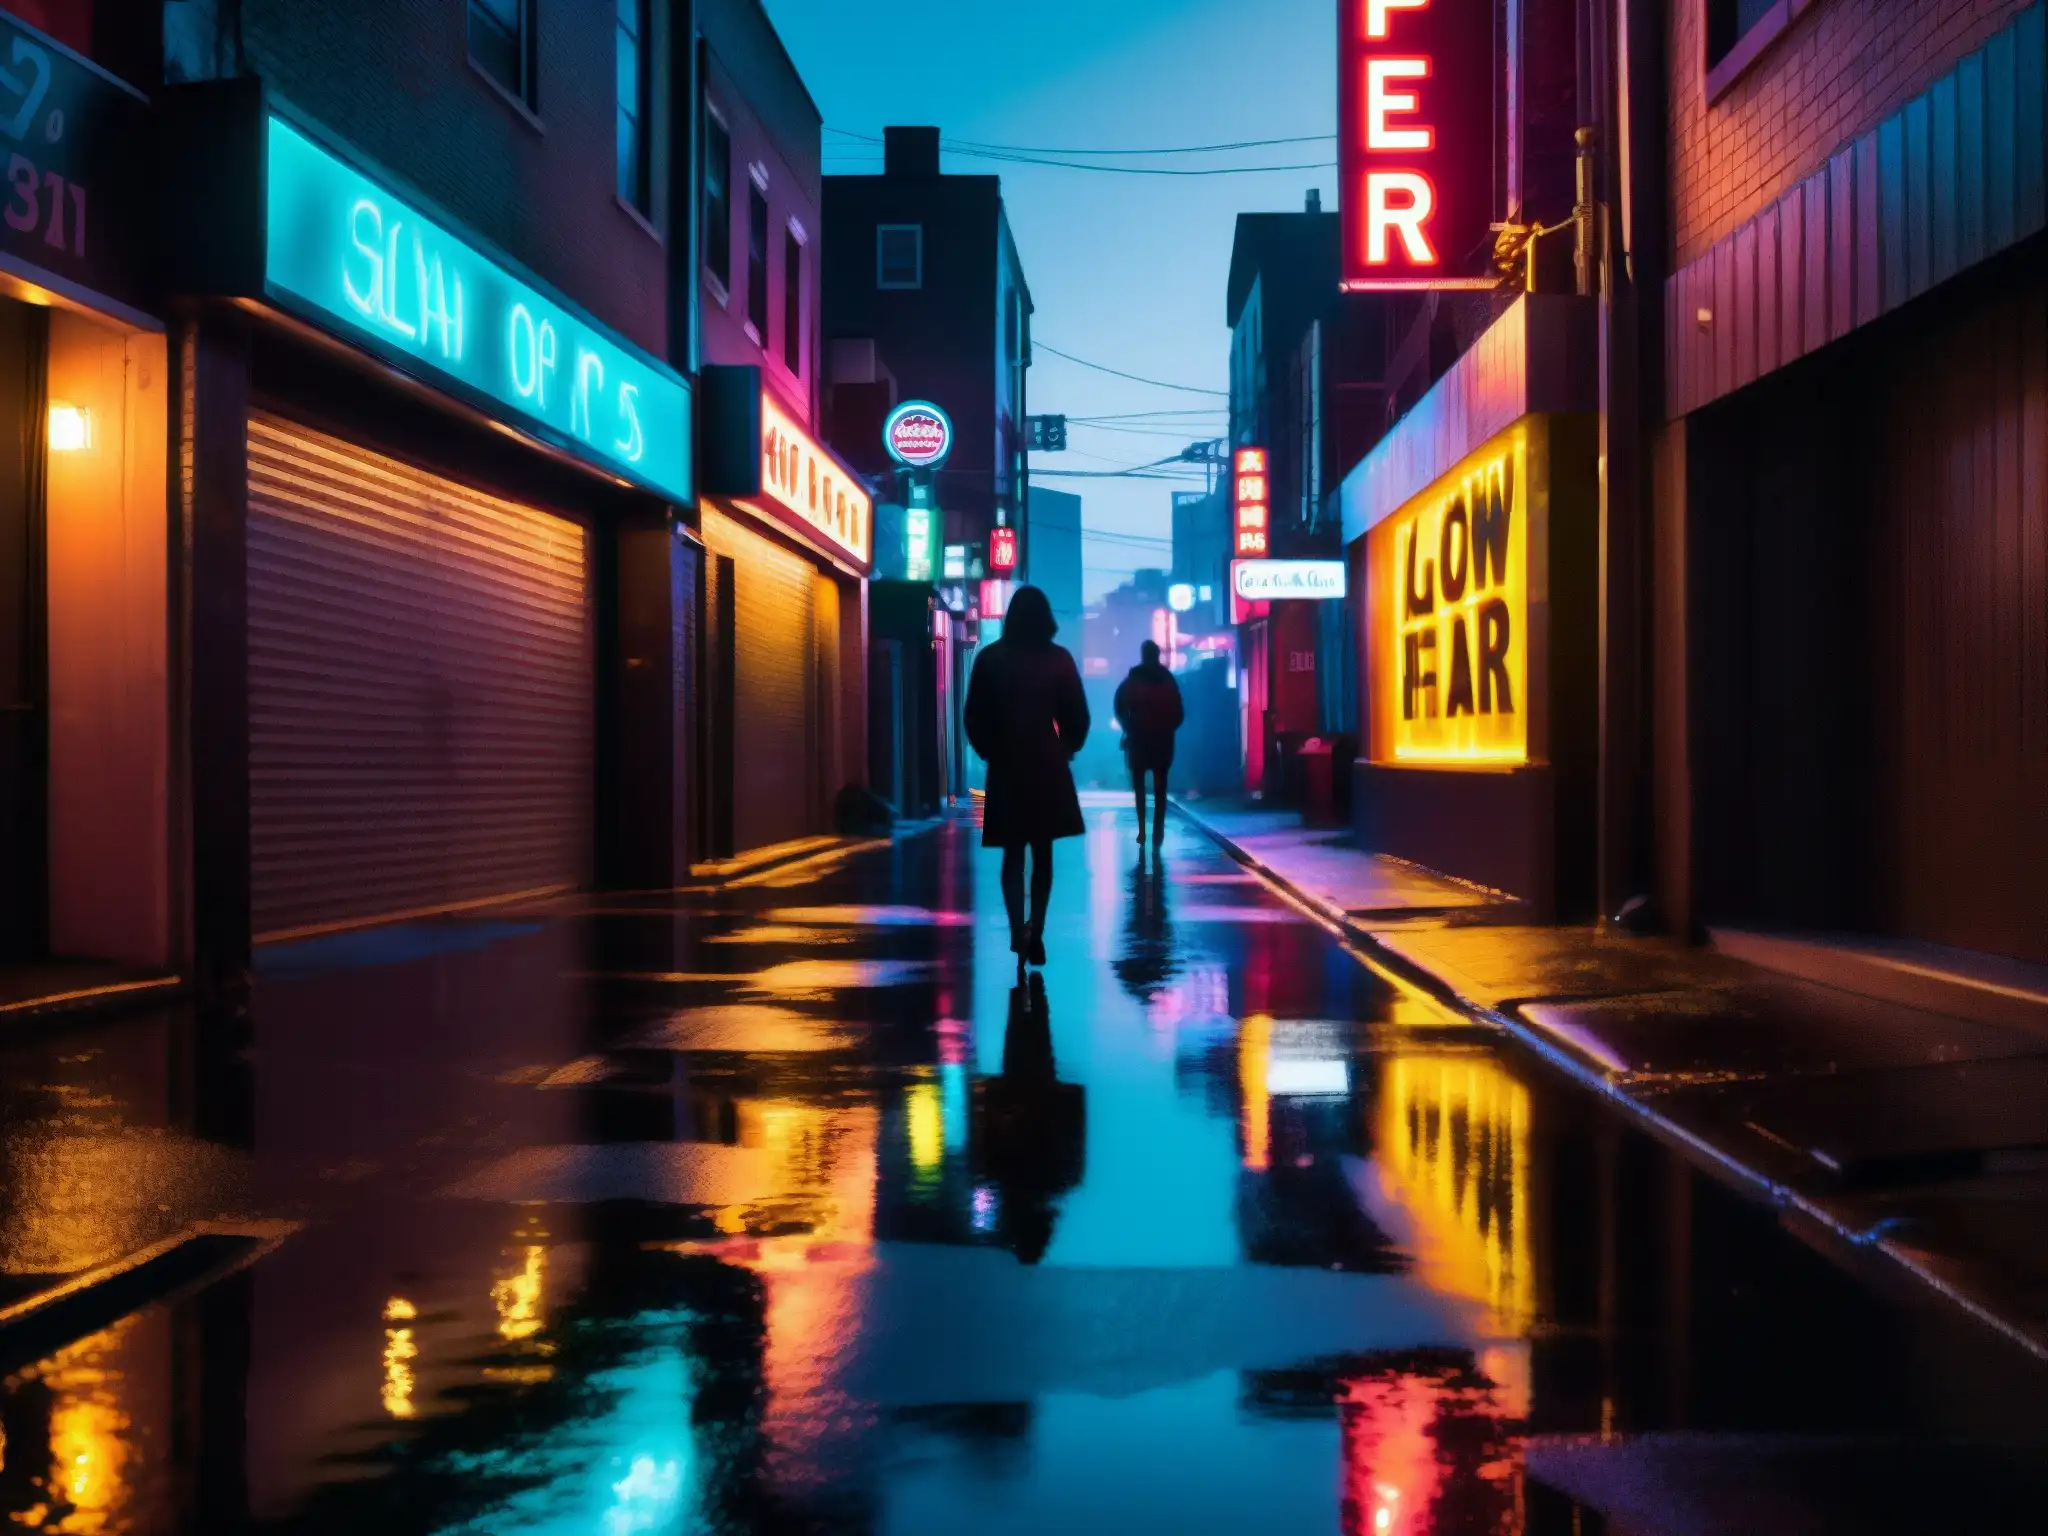 Influencia de leyendas urbanas digitales: Calle nocturna con neón reflejándose en el pavimento mojado, figura en la sombra con ojos brillantes